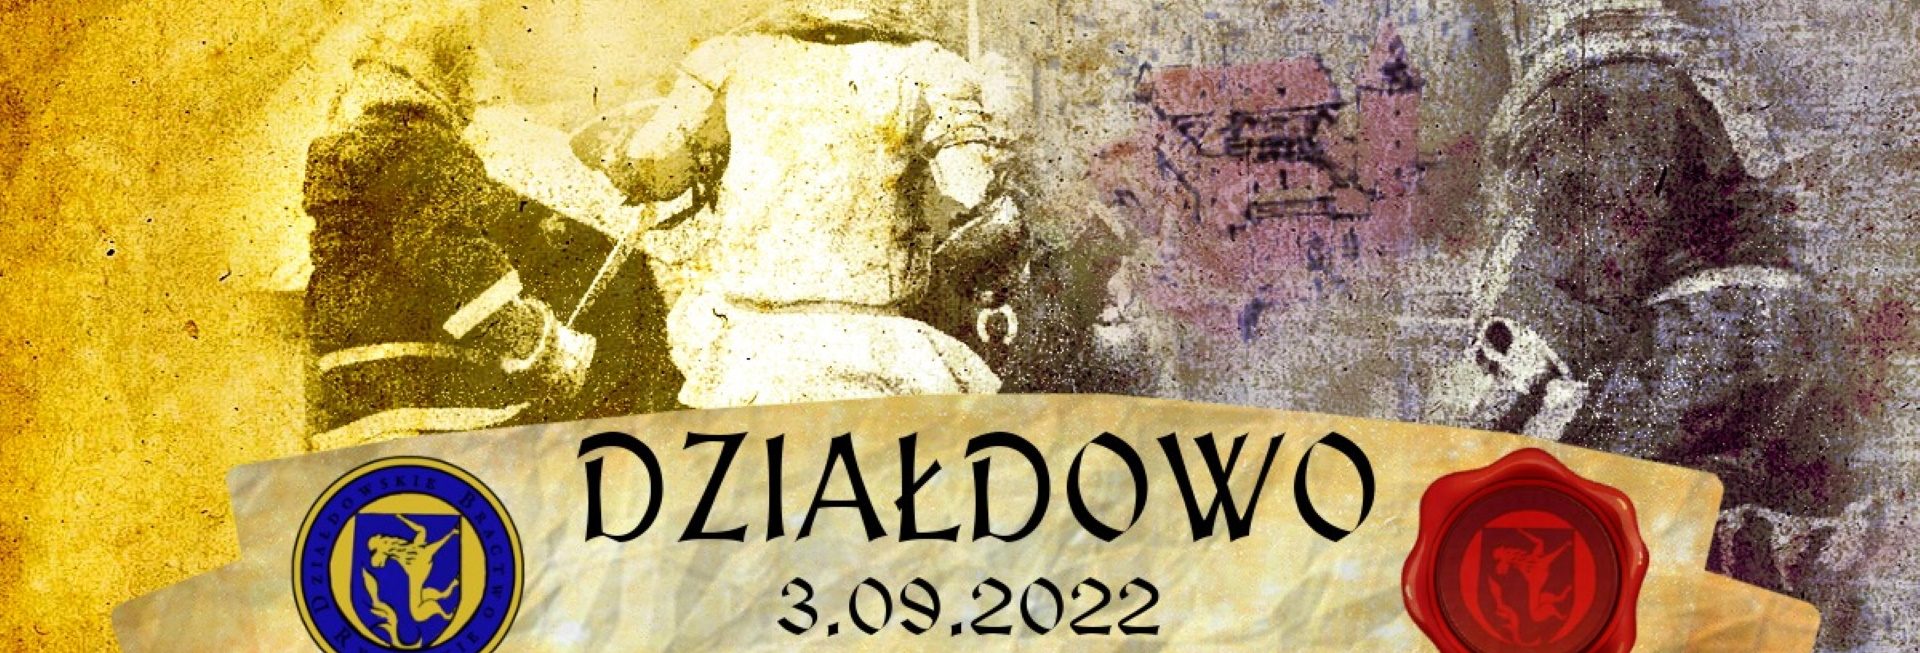 Plakat zapraszający na Turniej Rycerski w Działdowie 2022. 